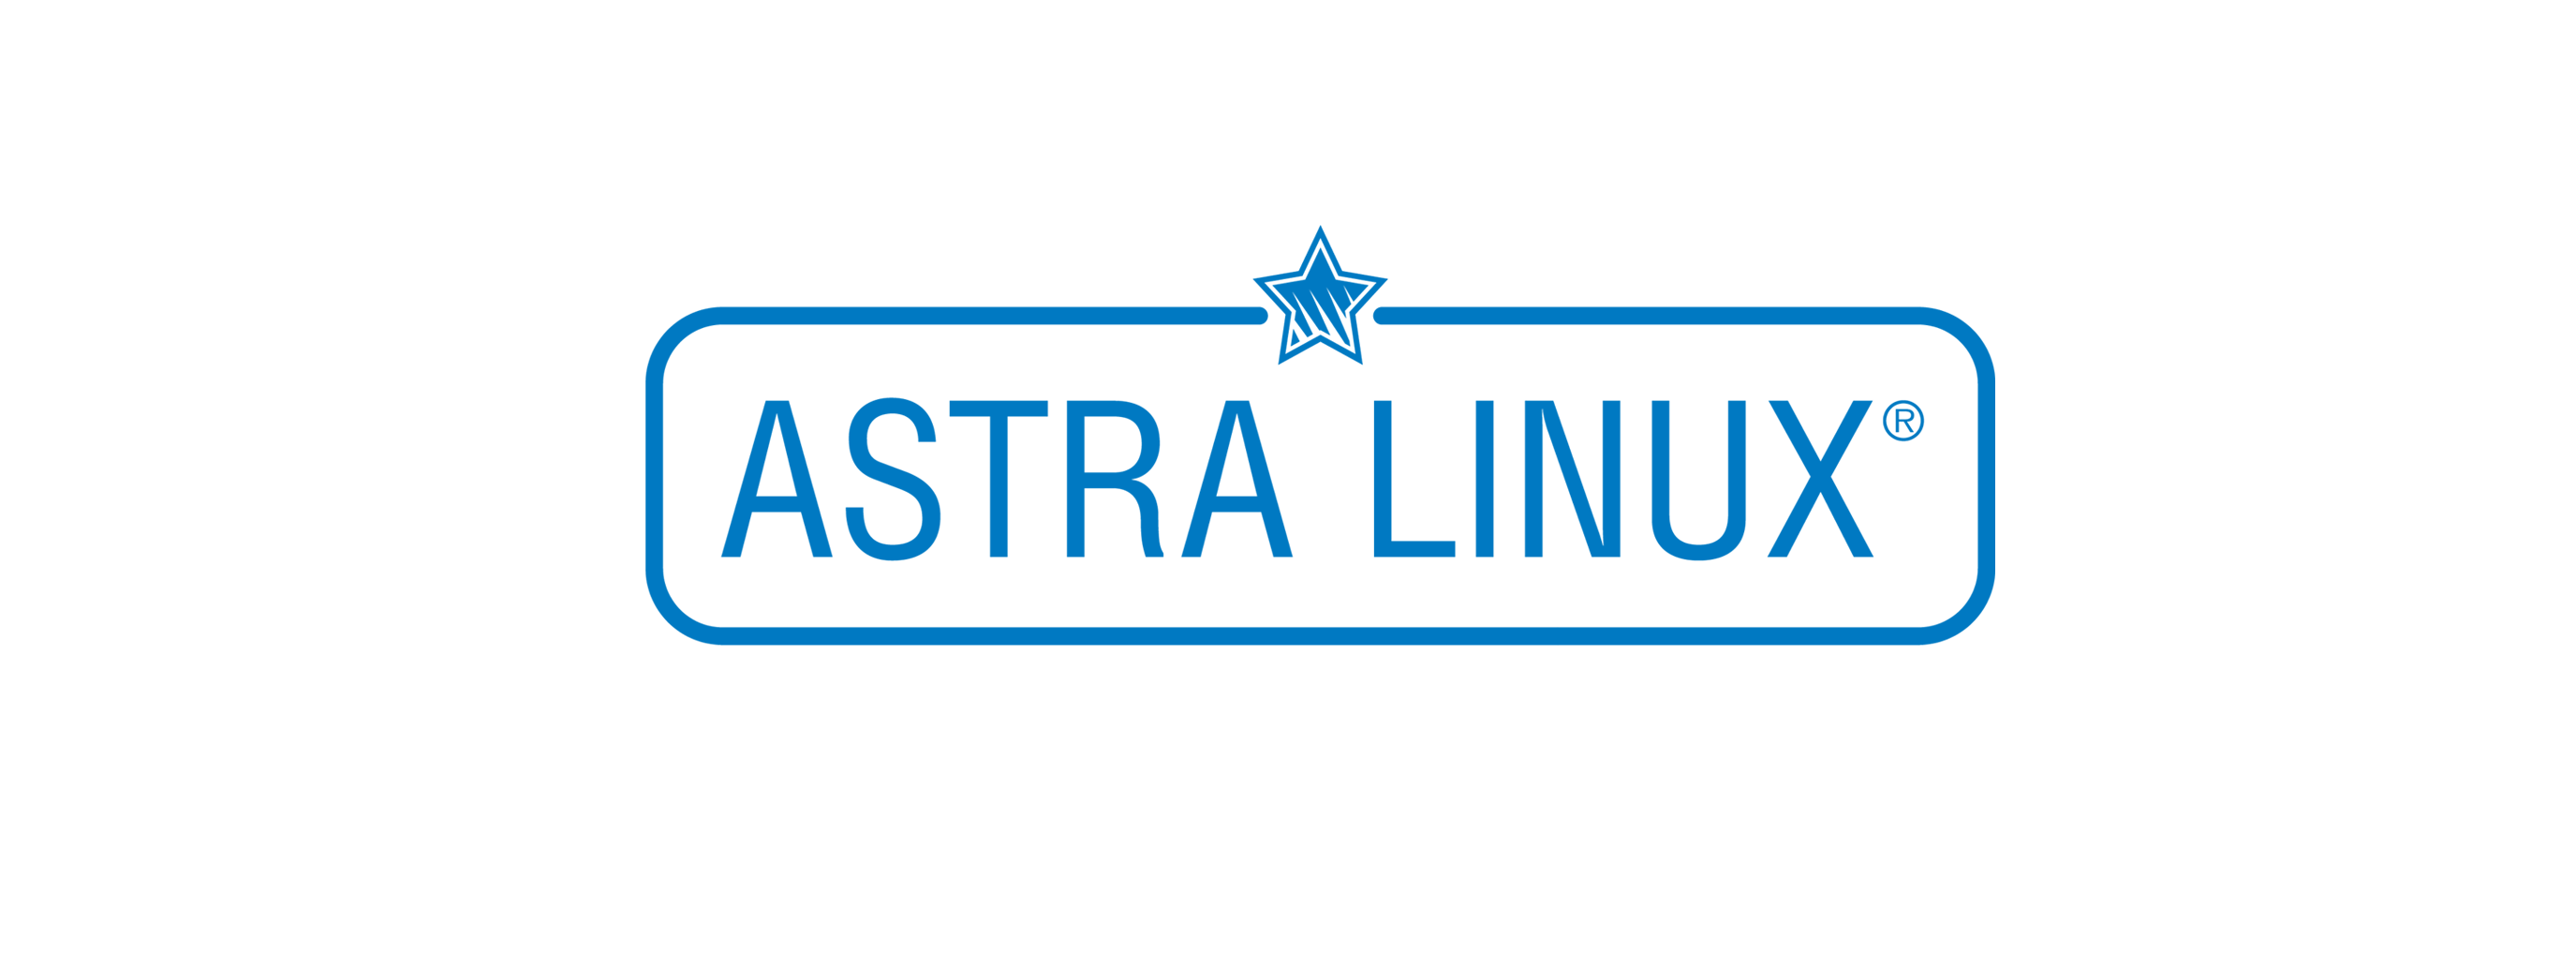 Лицензия РусБИТех Astra Linux Special Edition (очередное обновление 1.7), уровень защищенности Максимальный (Смоленск), РУСБ.10015-01 (ФСТЭК), Russian, на 36 месяцев базовая лицензия для сервера до 2 сокетов, электронный ключ (OS2101X8617DIGSKTSR02-PO36) Astra Linux Special Edition (очередное обновление 1.7), уровень защищенности Максимальный (Смоленск) - фото 1